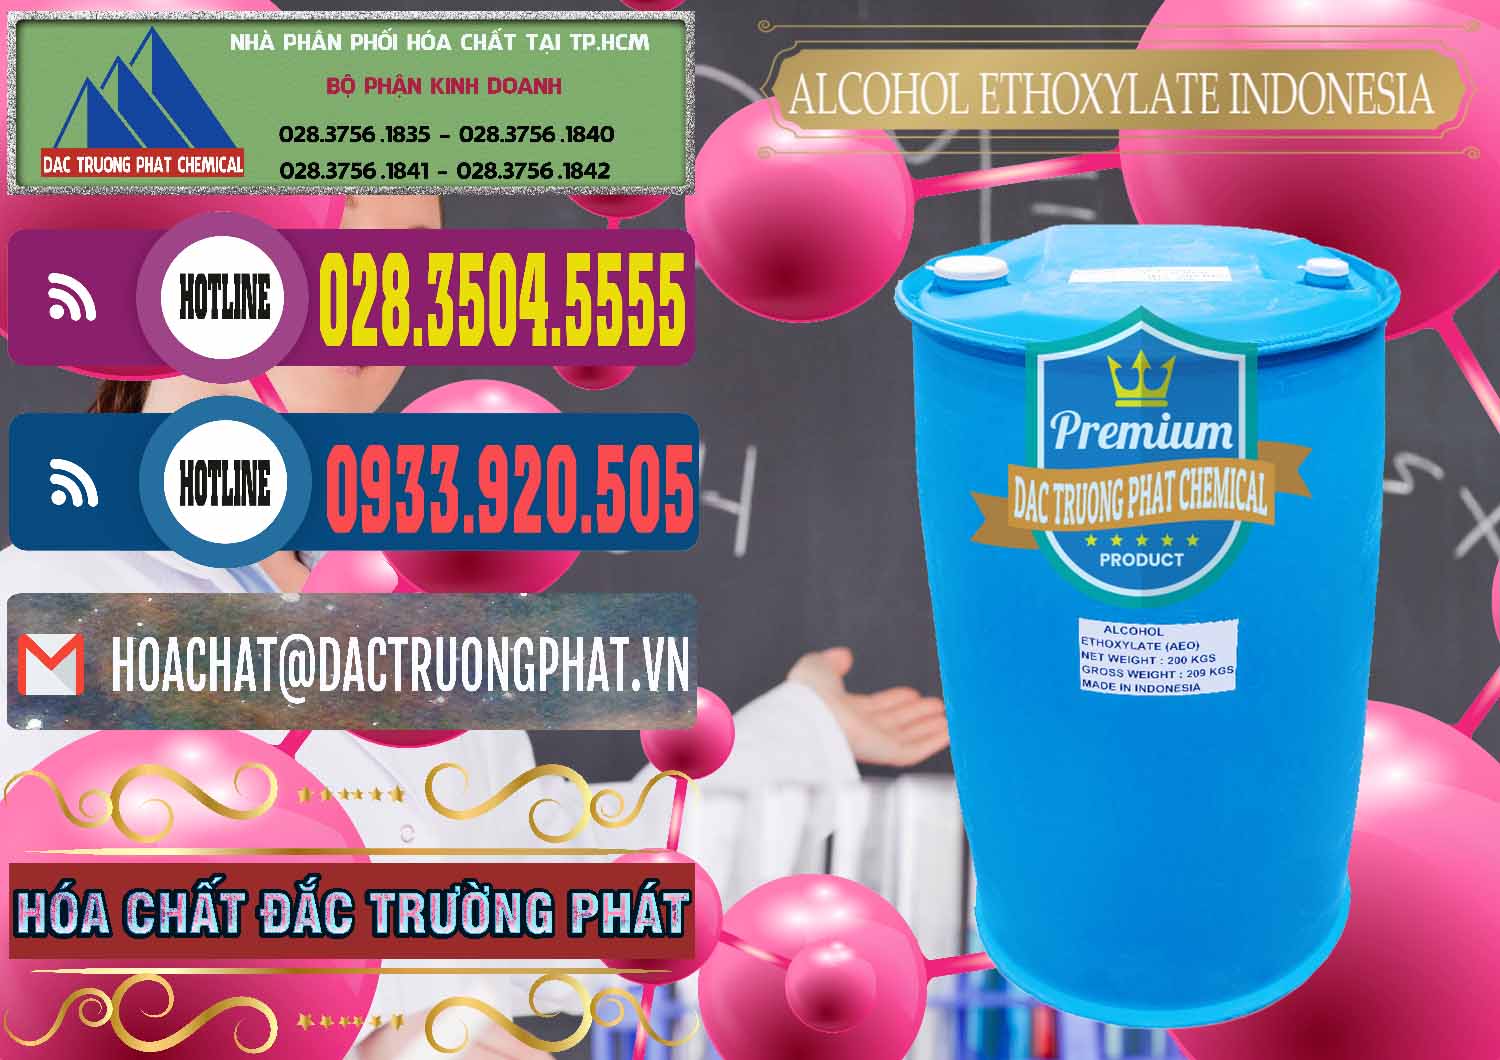 Đơn vị chuyên bán _ cung cấp Alcohol Ethoxylate Indonesia - 0308 - Nơi chuyên phân phối - kinh doanh hóa chất tại TP.HCM - muabanhoachat.com.vn